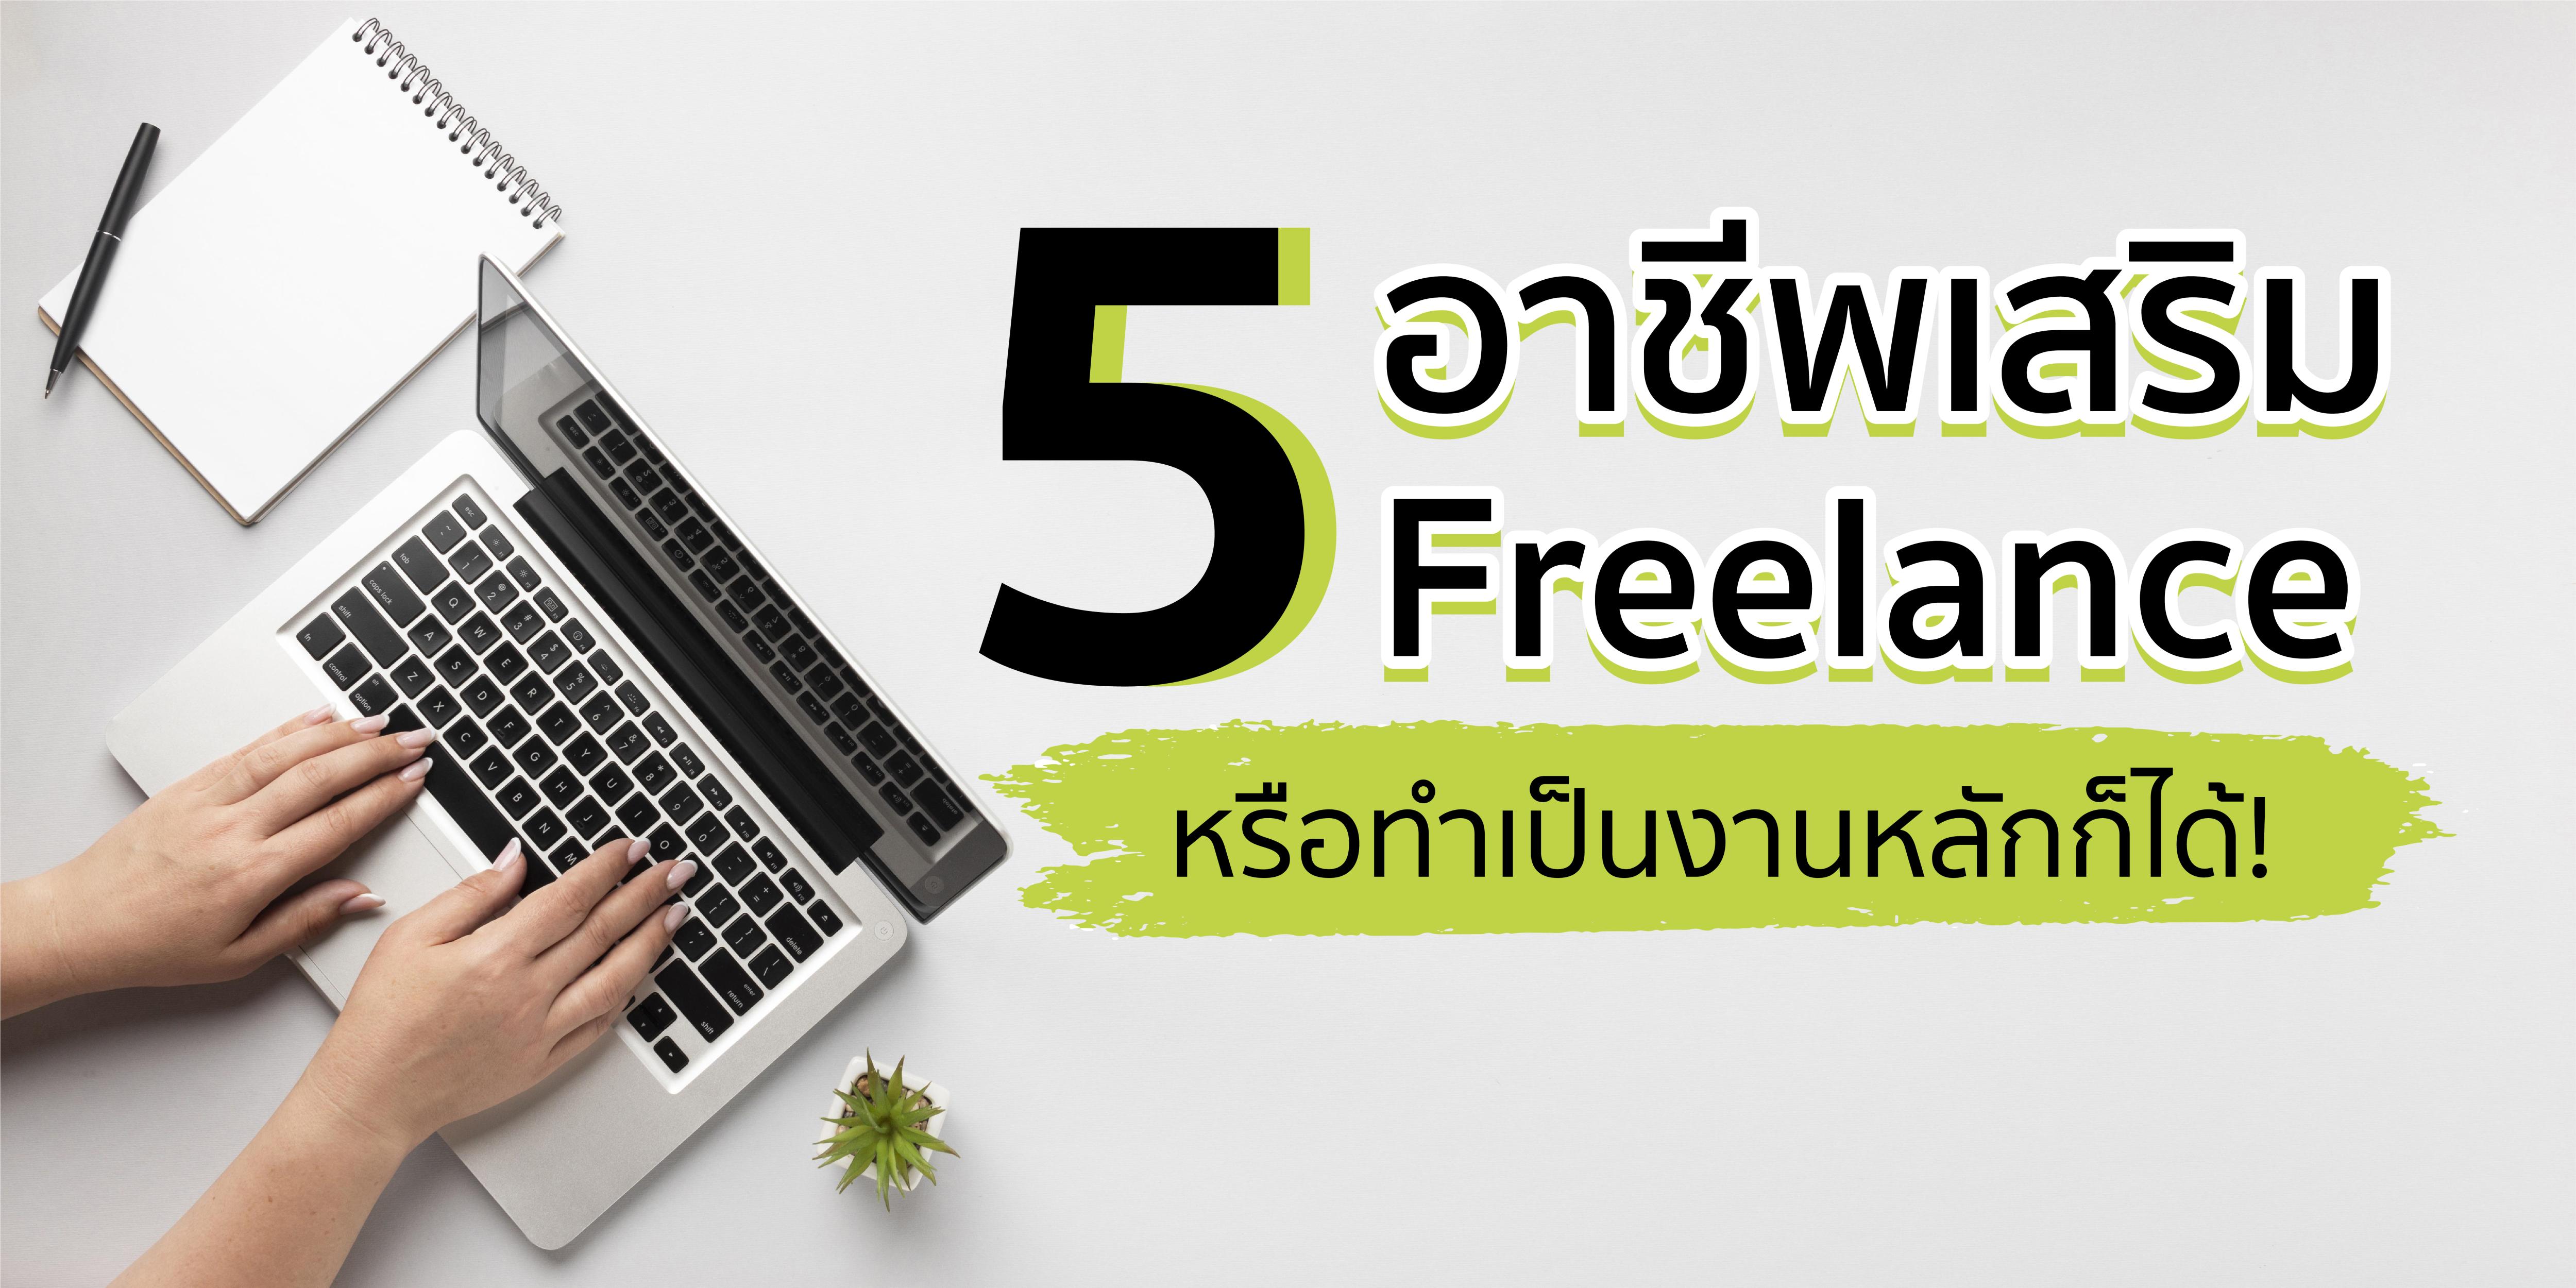 5 อาชีพเสริม เป็นฟรีแลนซ์ Freelance หรือทำเป็นงานหลักก็ได้!